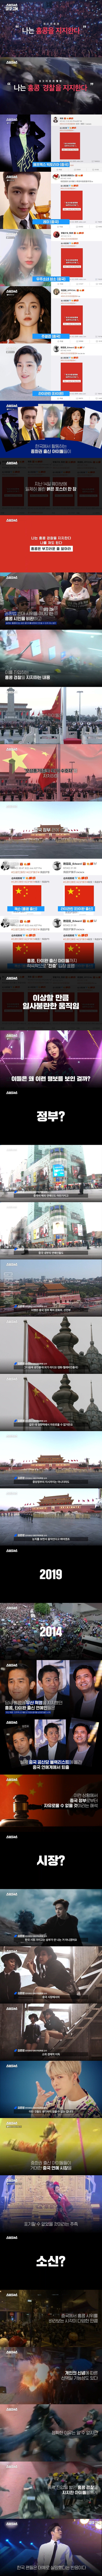 중국 출신 아이돌 웨이보에 올라온 붉은 포스터의 의미 .jpg